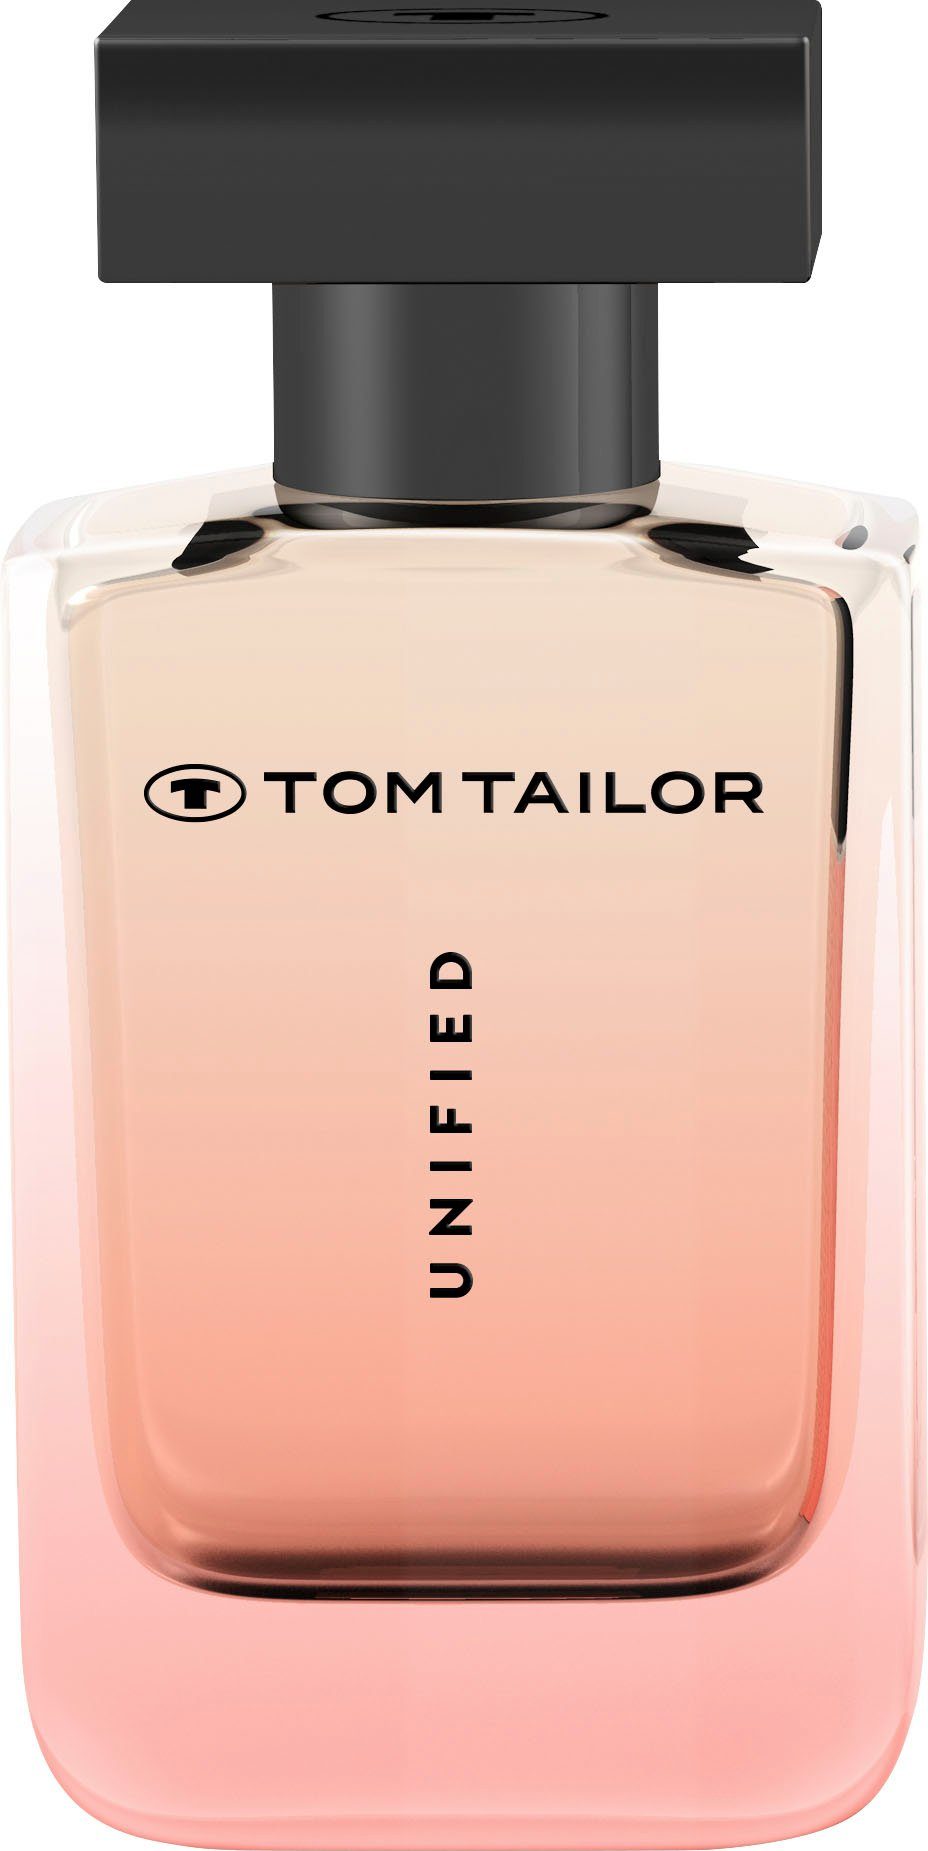 TAILOR Parfum Eau de UNIFIED Woman TOM